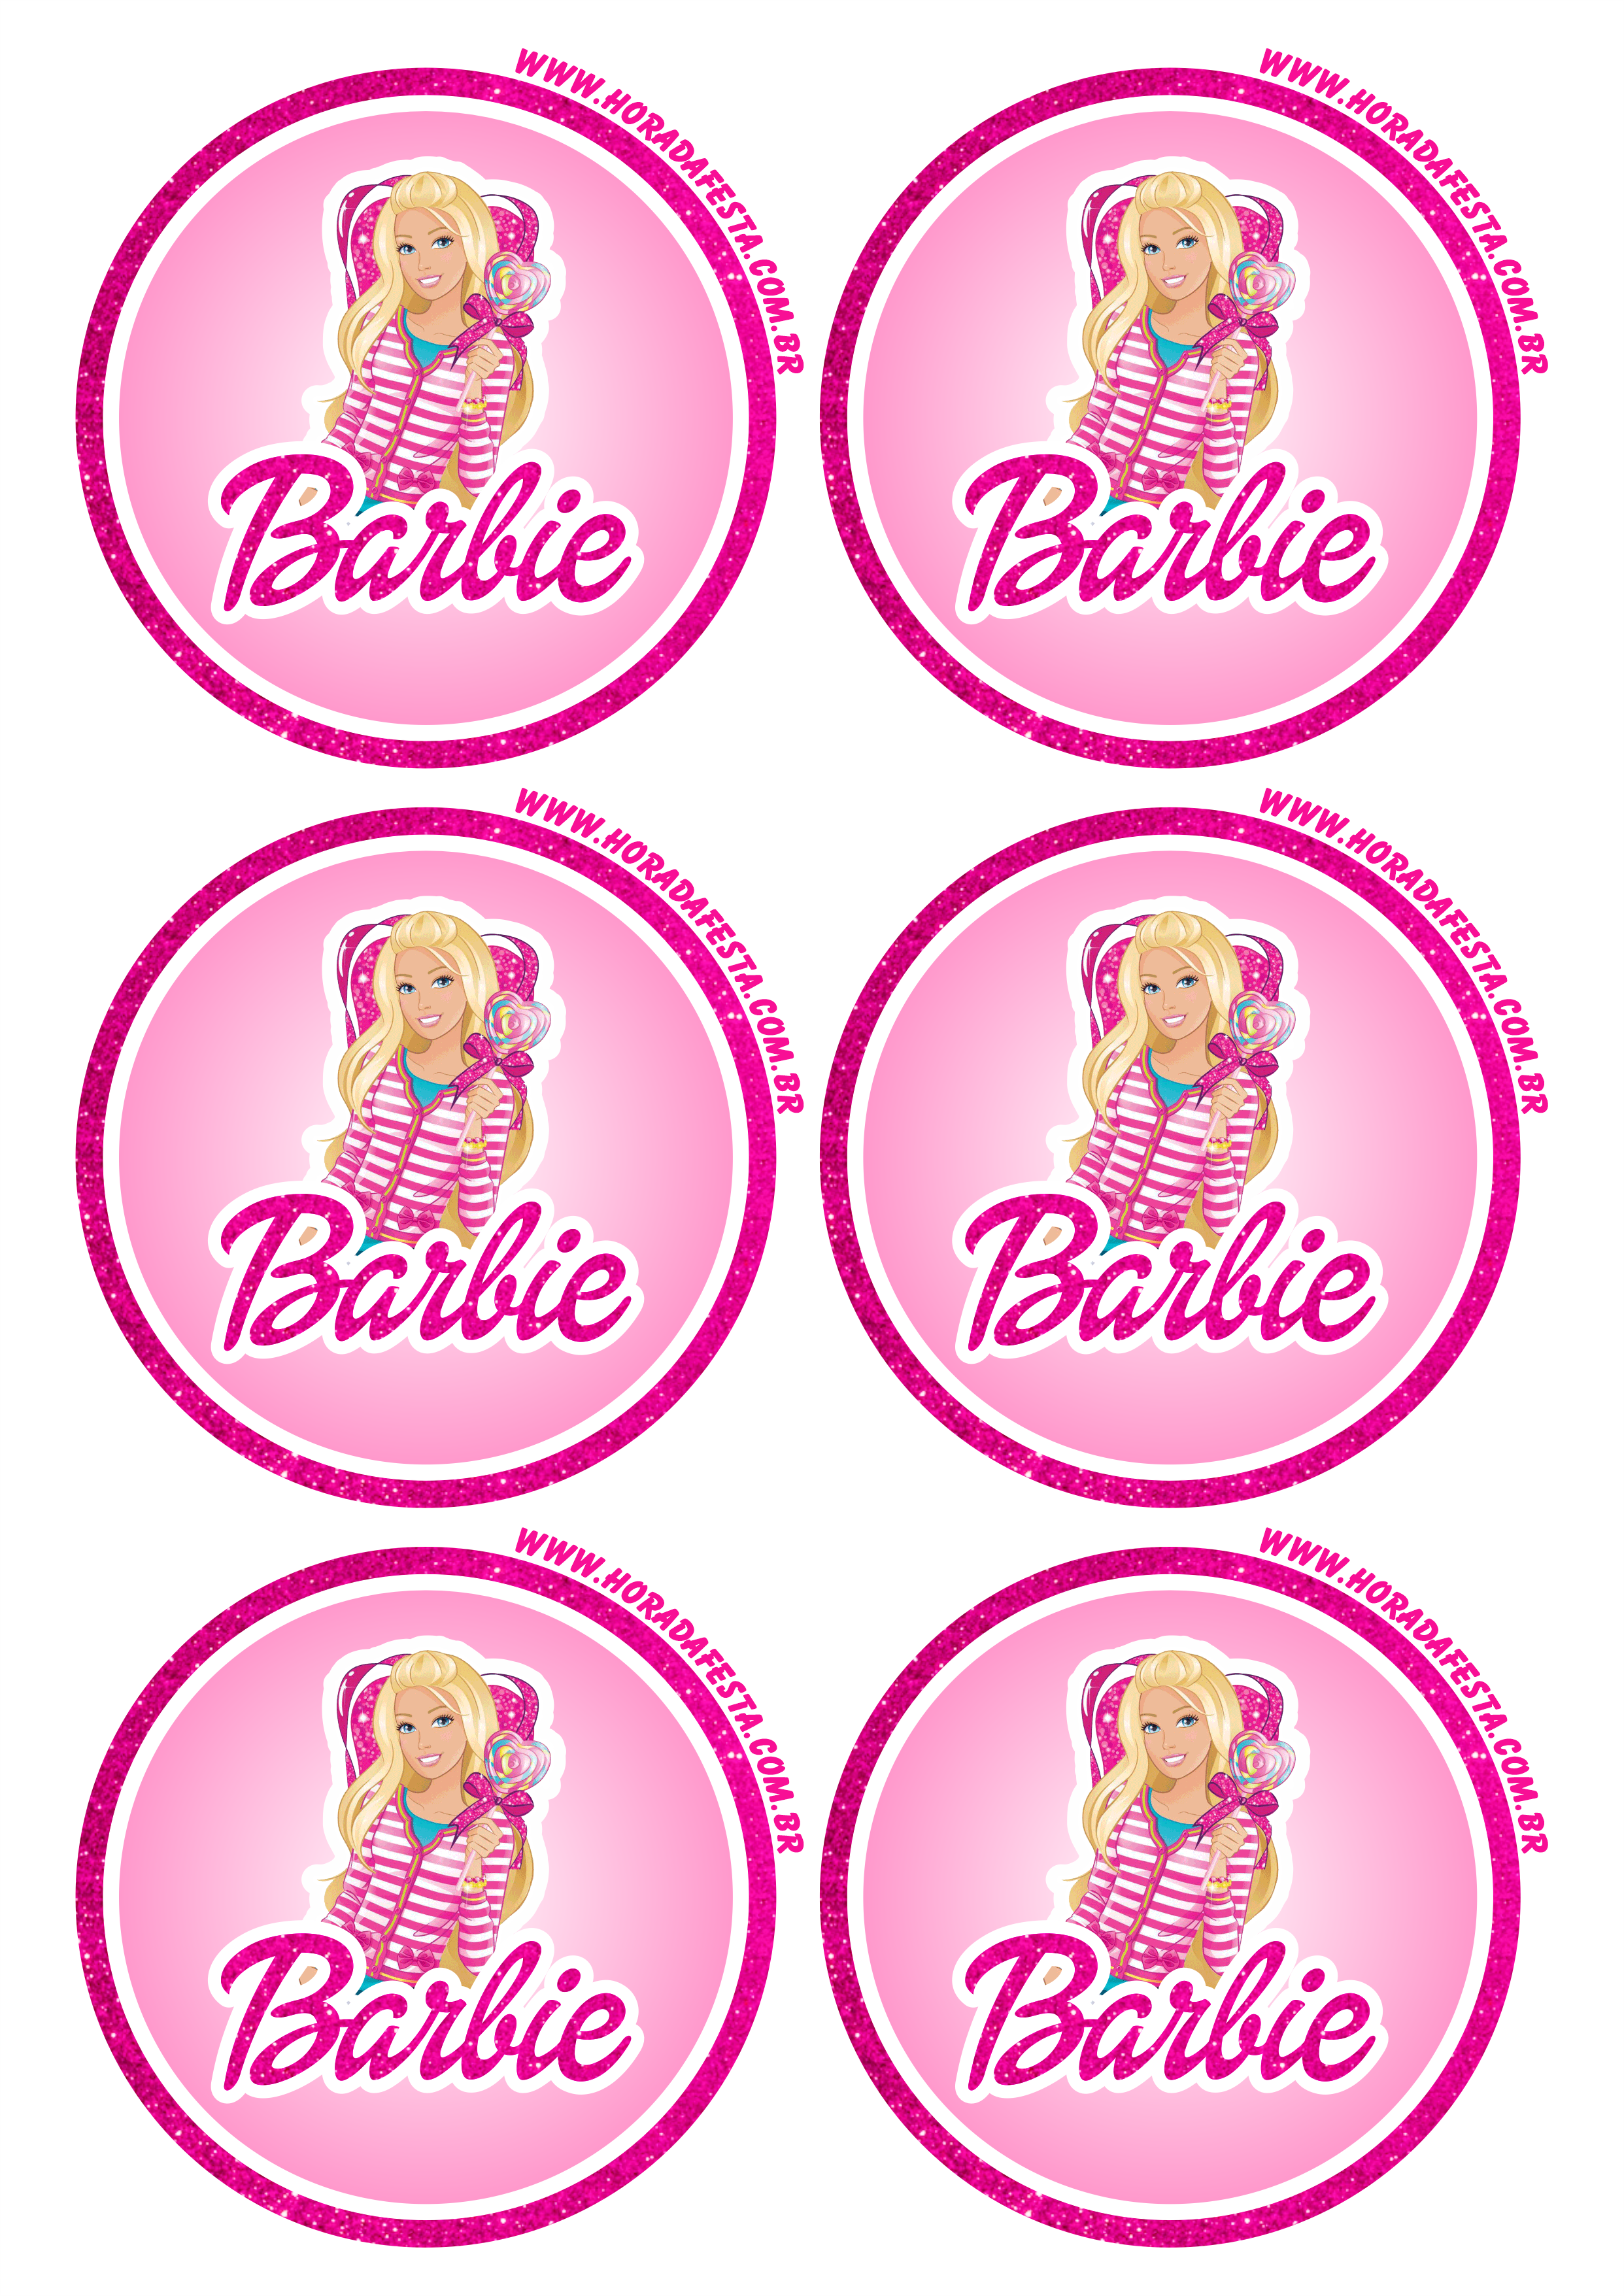 Festa Barbie Kit Só um Bolinho - 6 Itens - Extra Festas